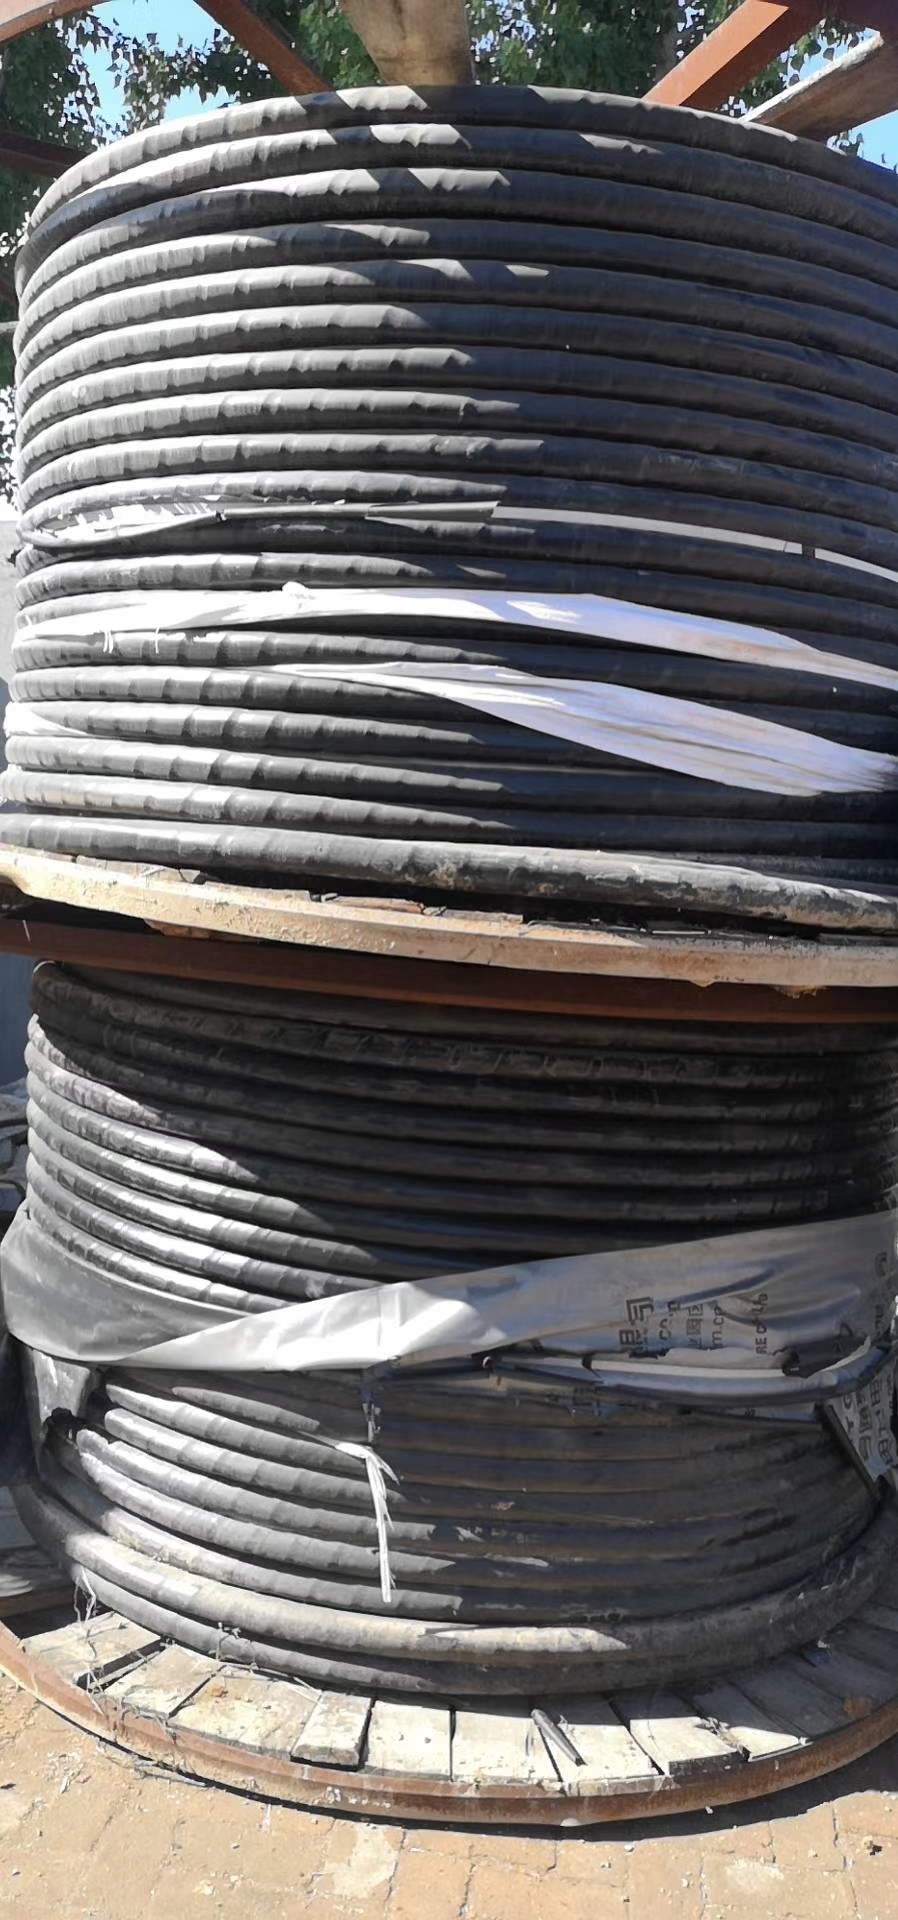 吉林电缆回收(24小时上门吉林电缆回收公司 吉林电缆回收价格)